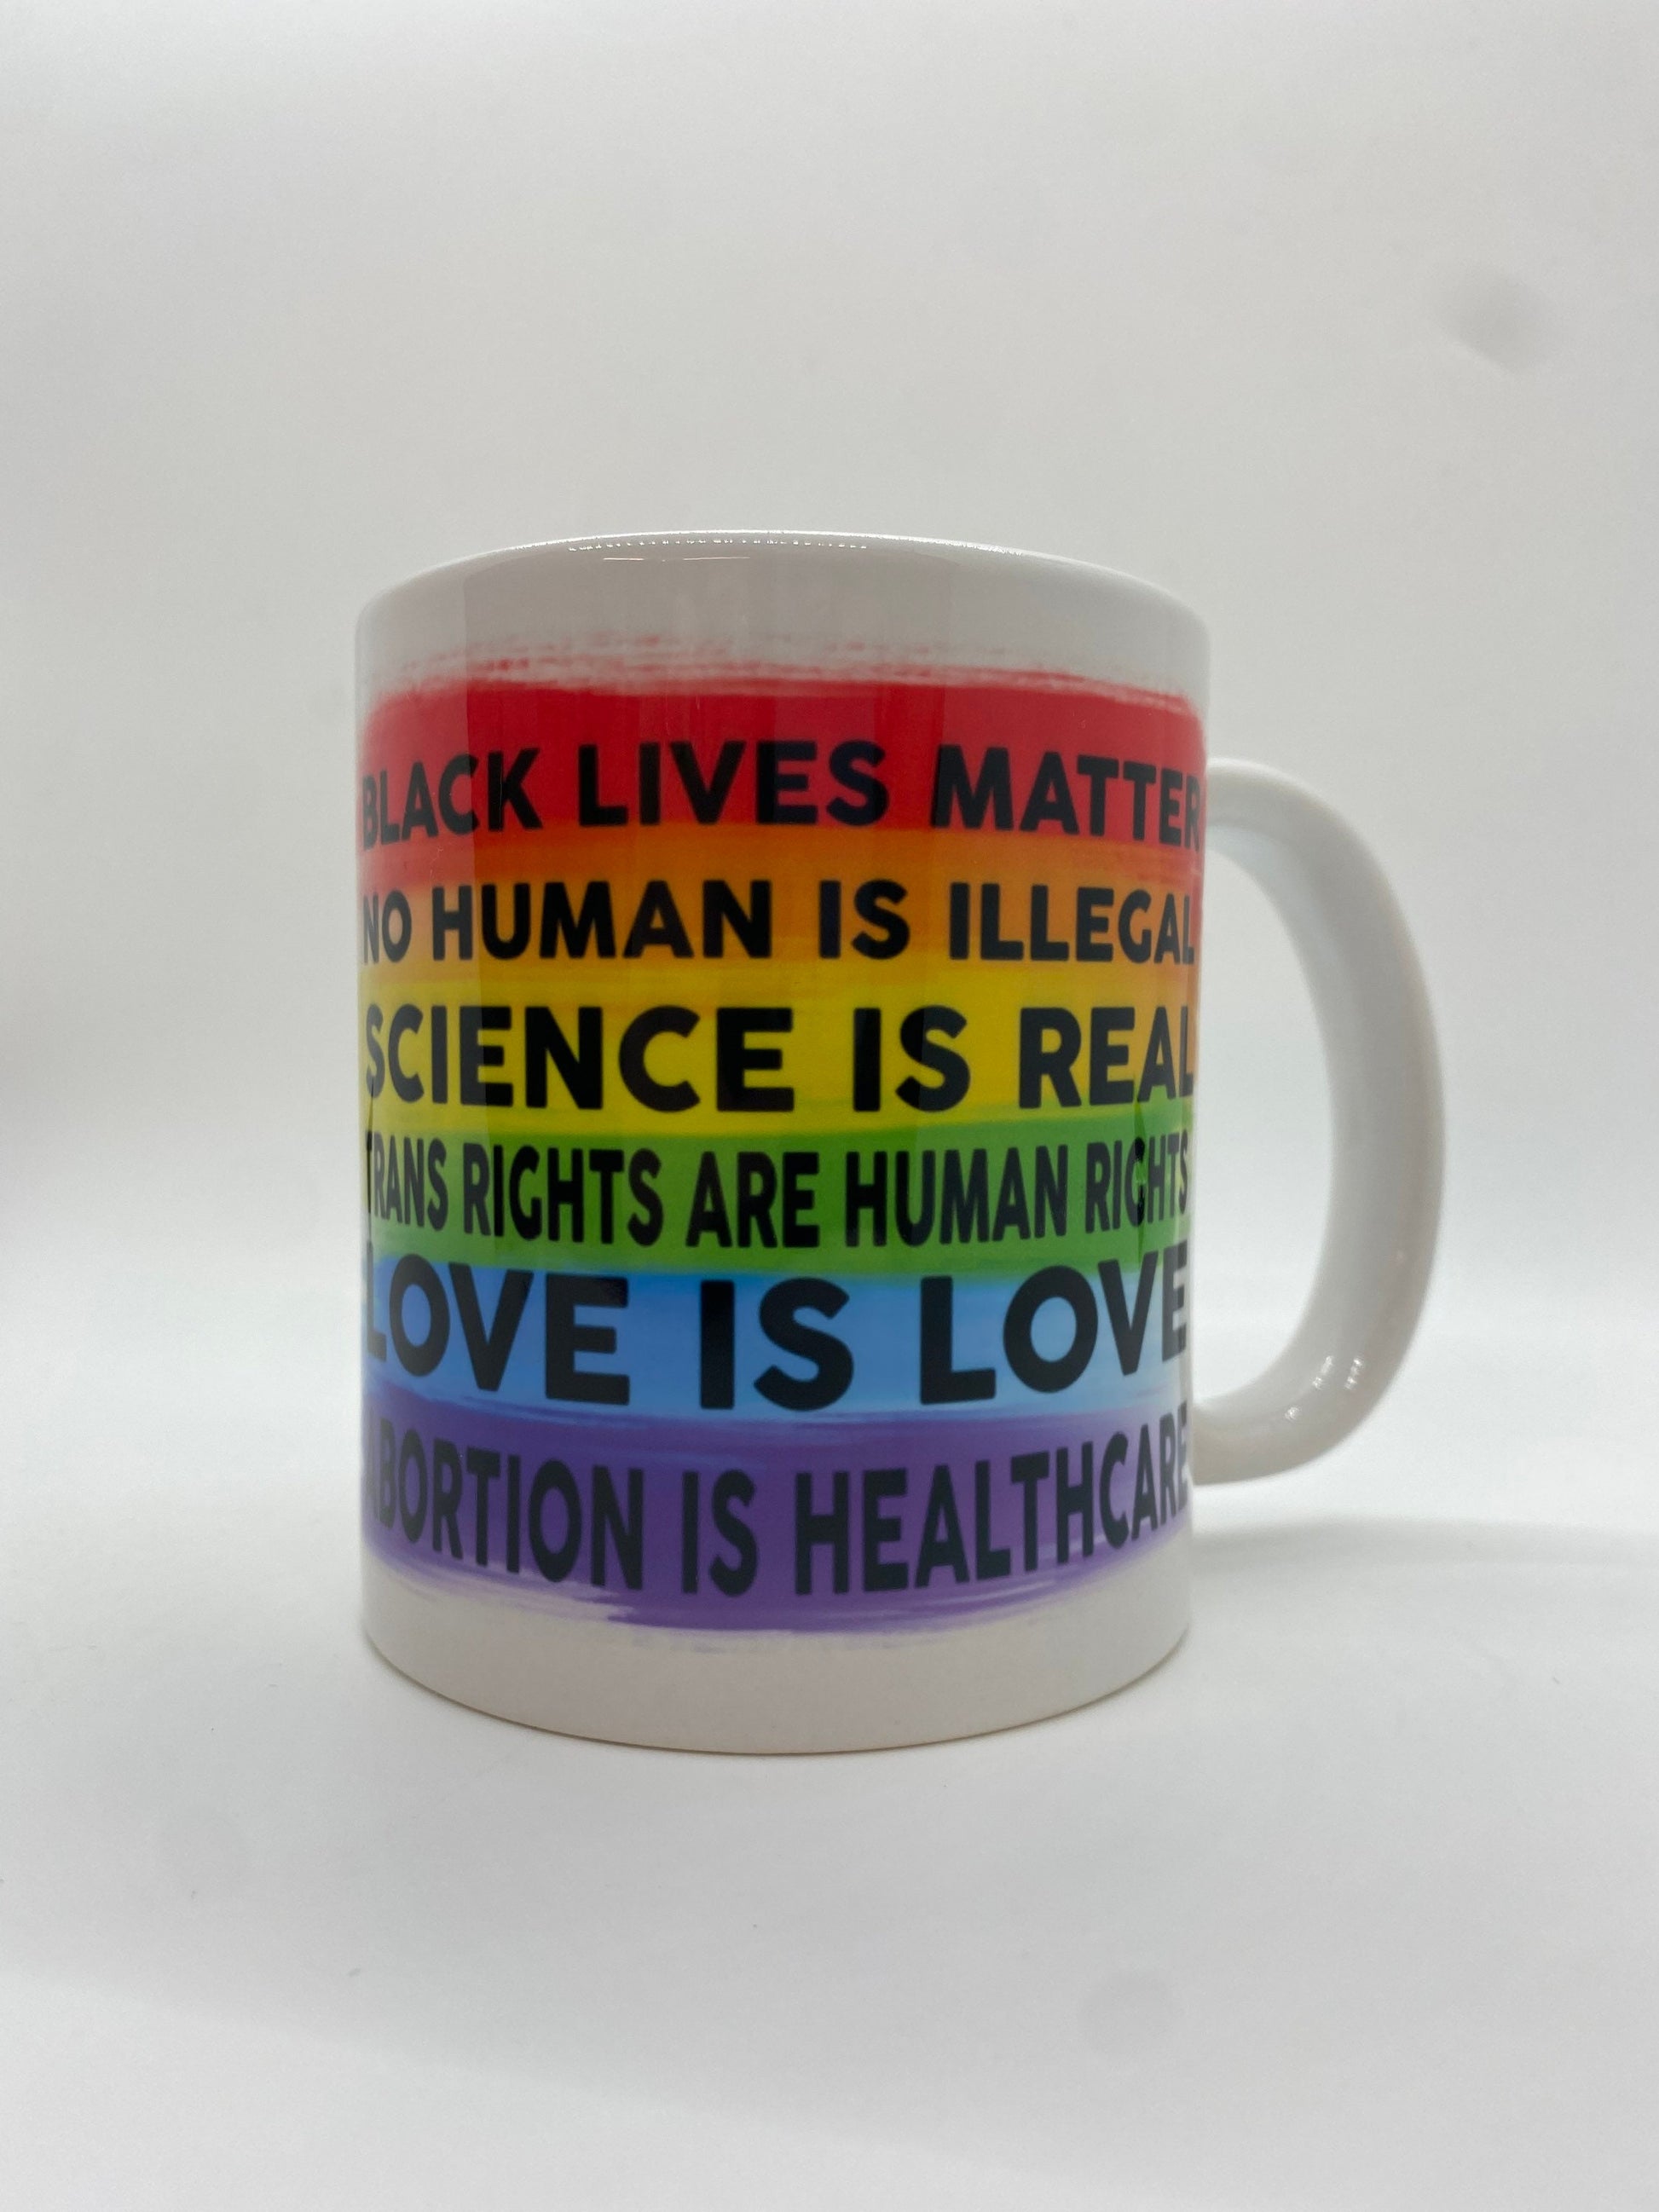 Love is Love - Progressive Creed Mug